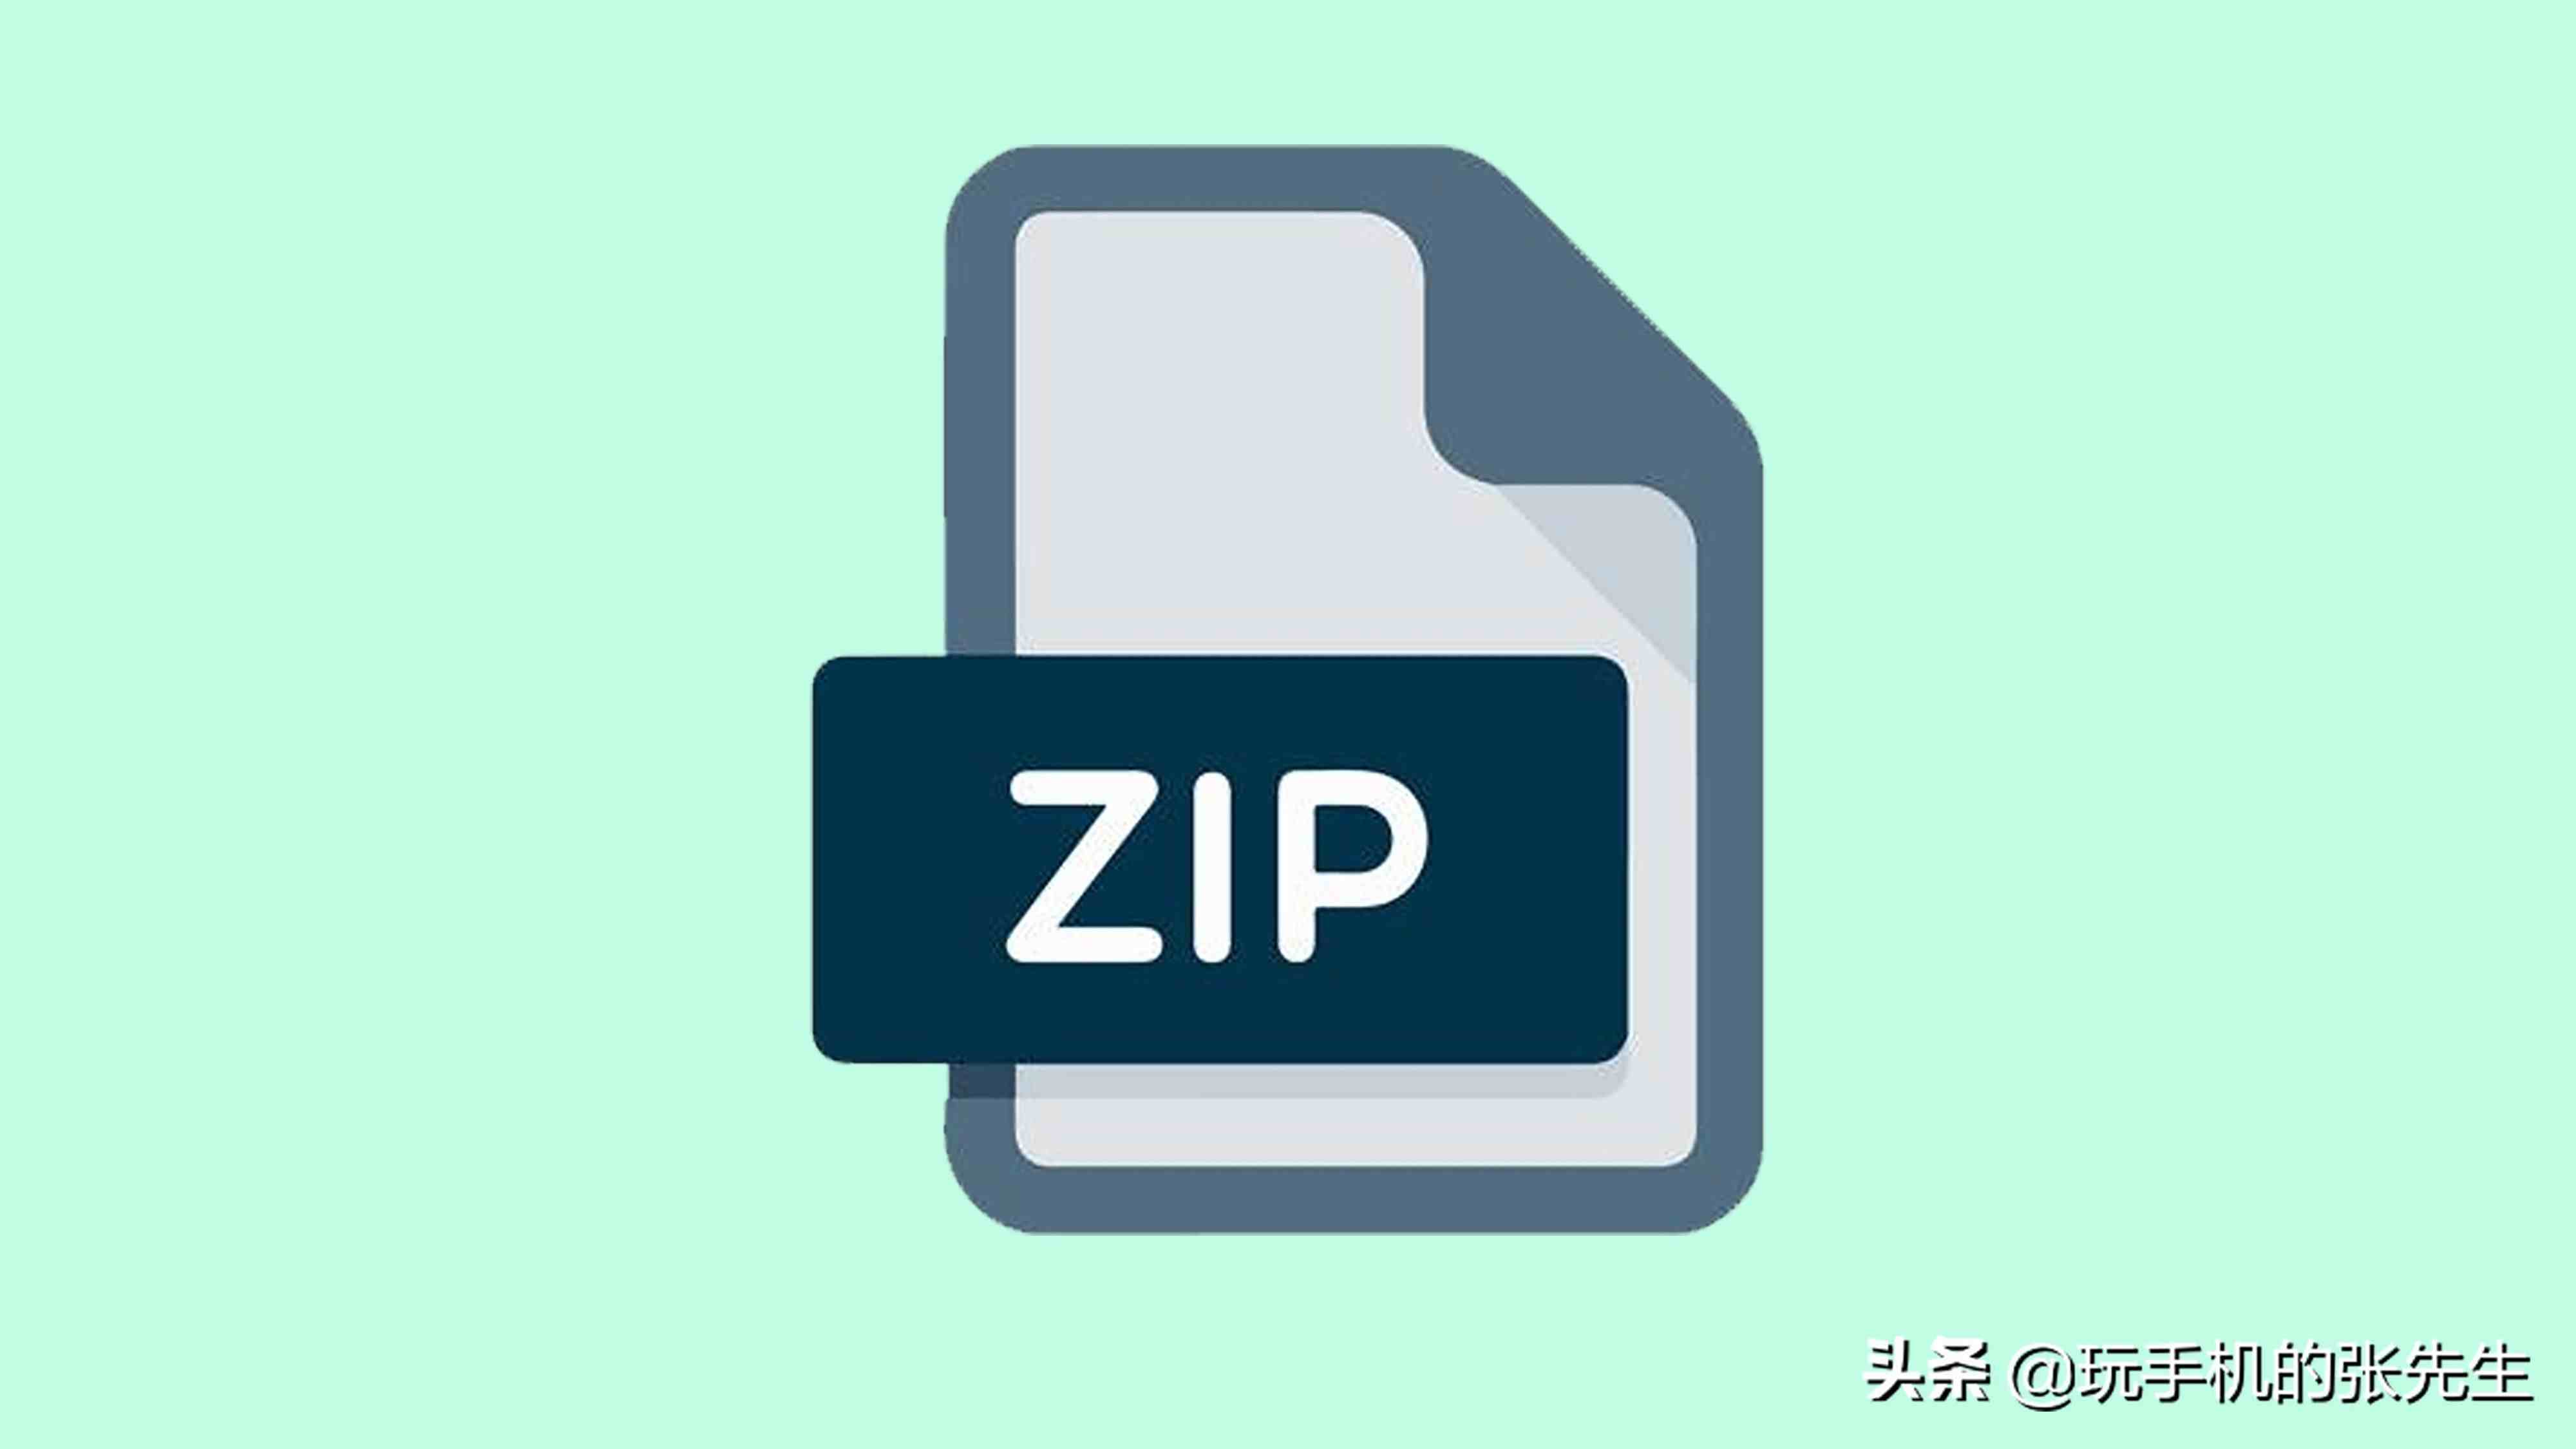 zip格式的文件怎么打开，手机和电脑的操作方法一样吗？